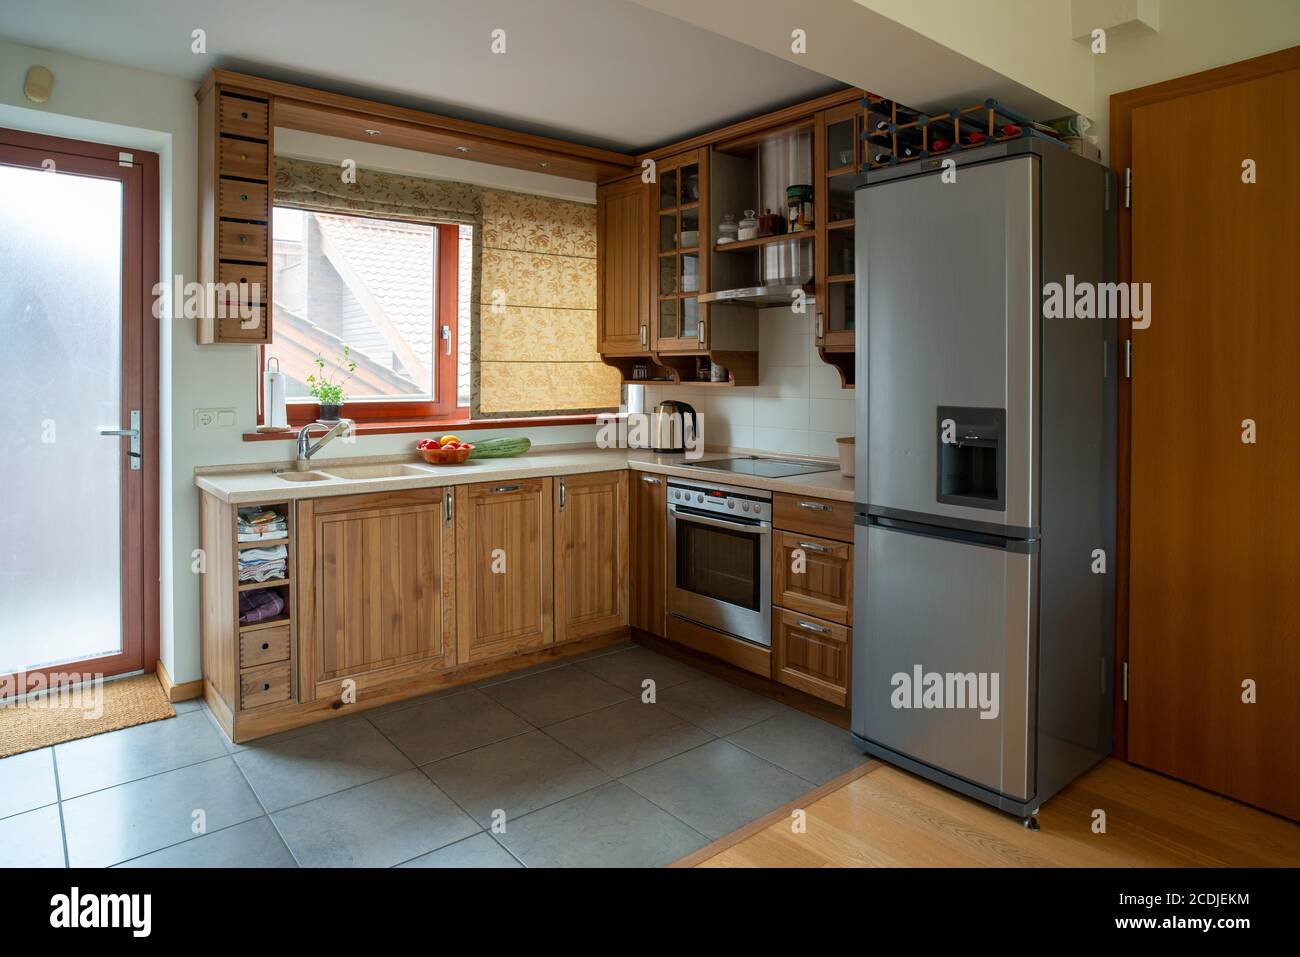 Eckküche mit Fenster in kleiner Wohnung. Holzmöbel in warmen Farbtönen, Weitwinkelansicht. Stockfoto